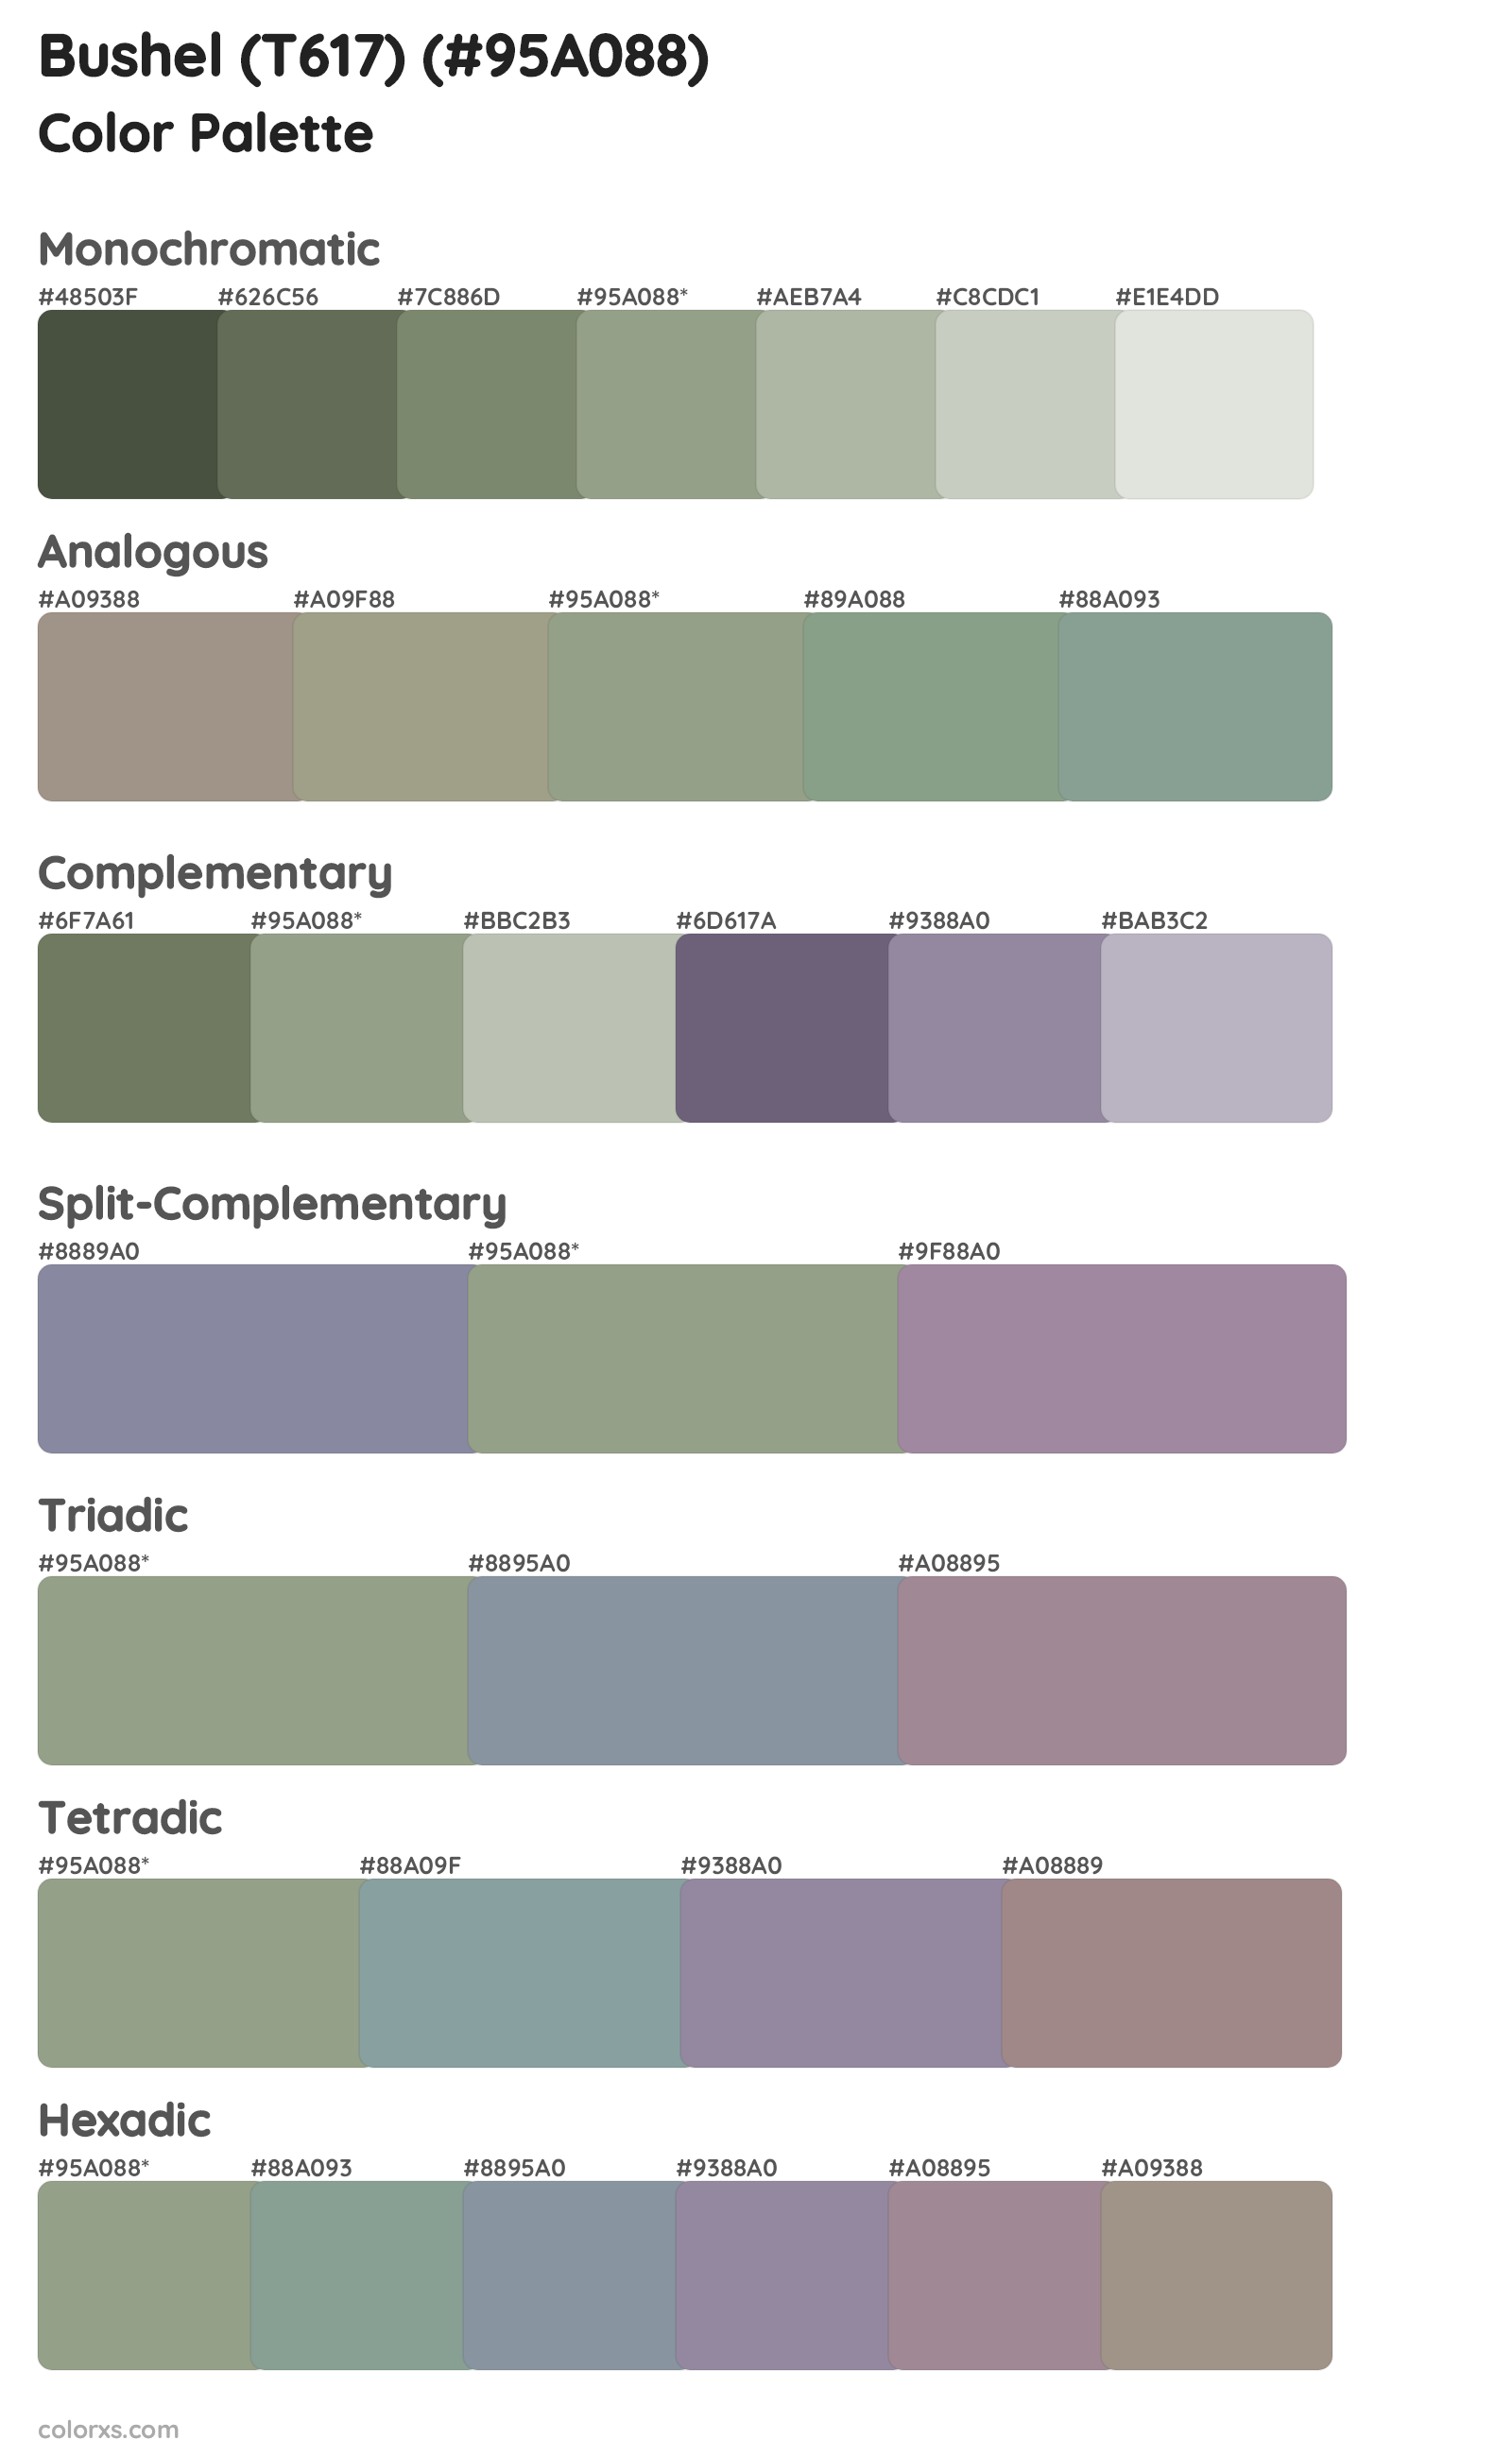 Bushel (T617) Color Scheme Palettes